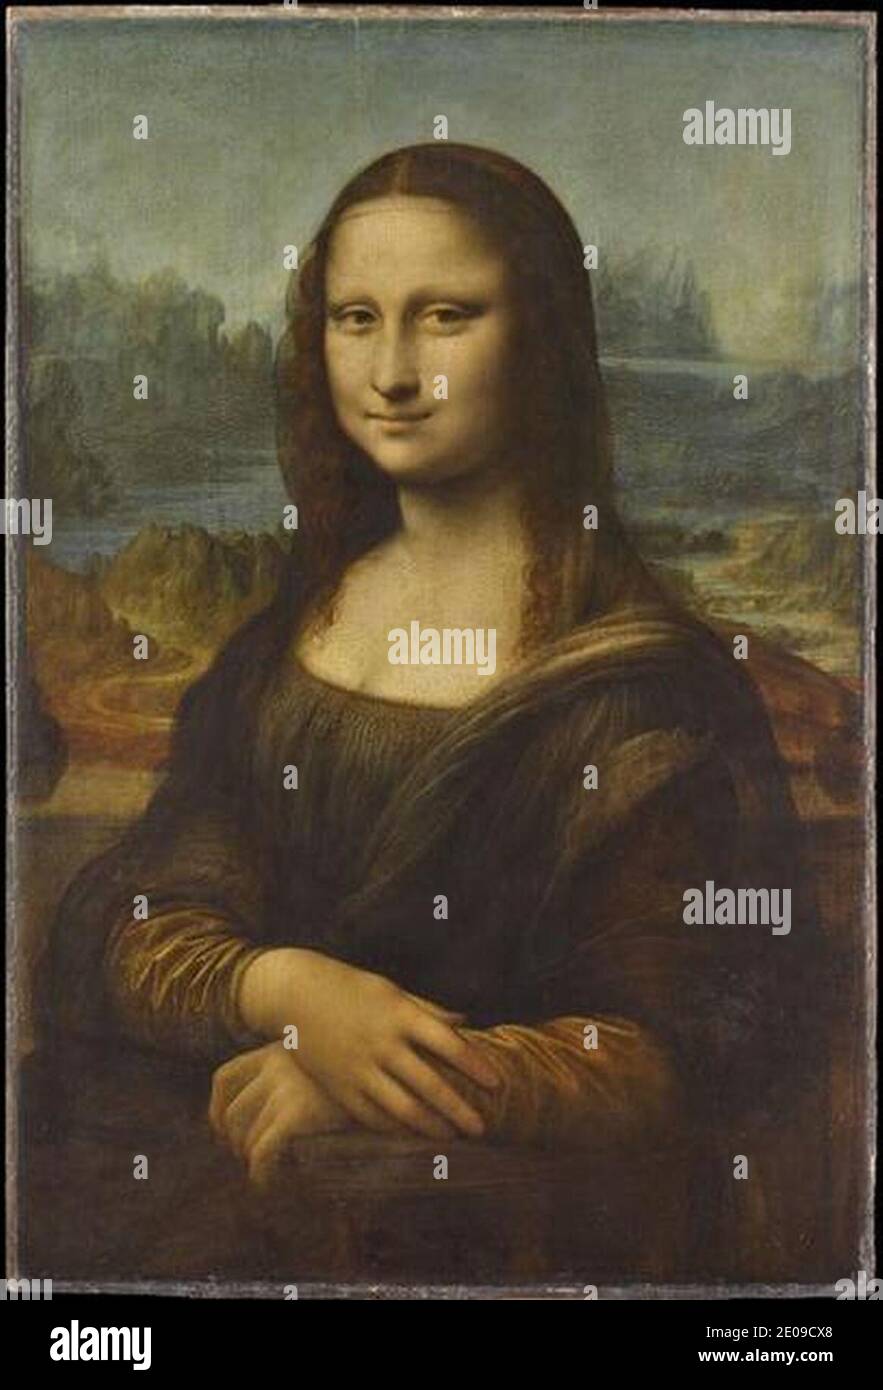 Leonardo di ser Piero da Vinci - Ritratto di Monna Lisa (dite la Joconde) - Louvre 779. Foto Stock